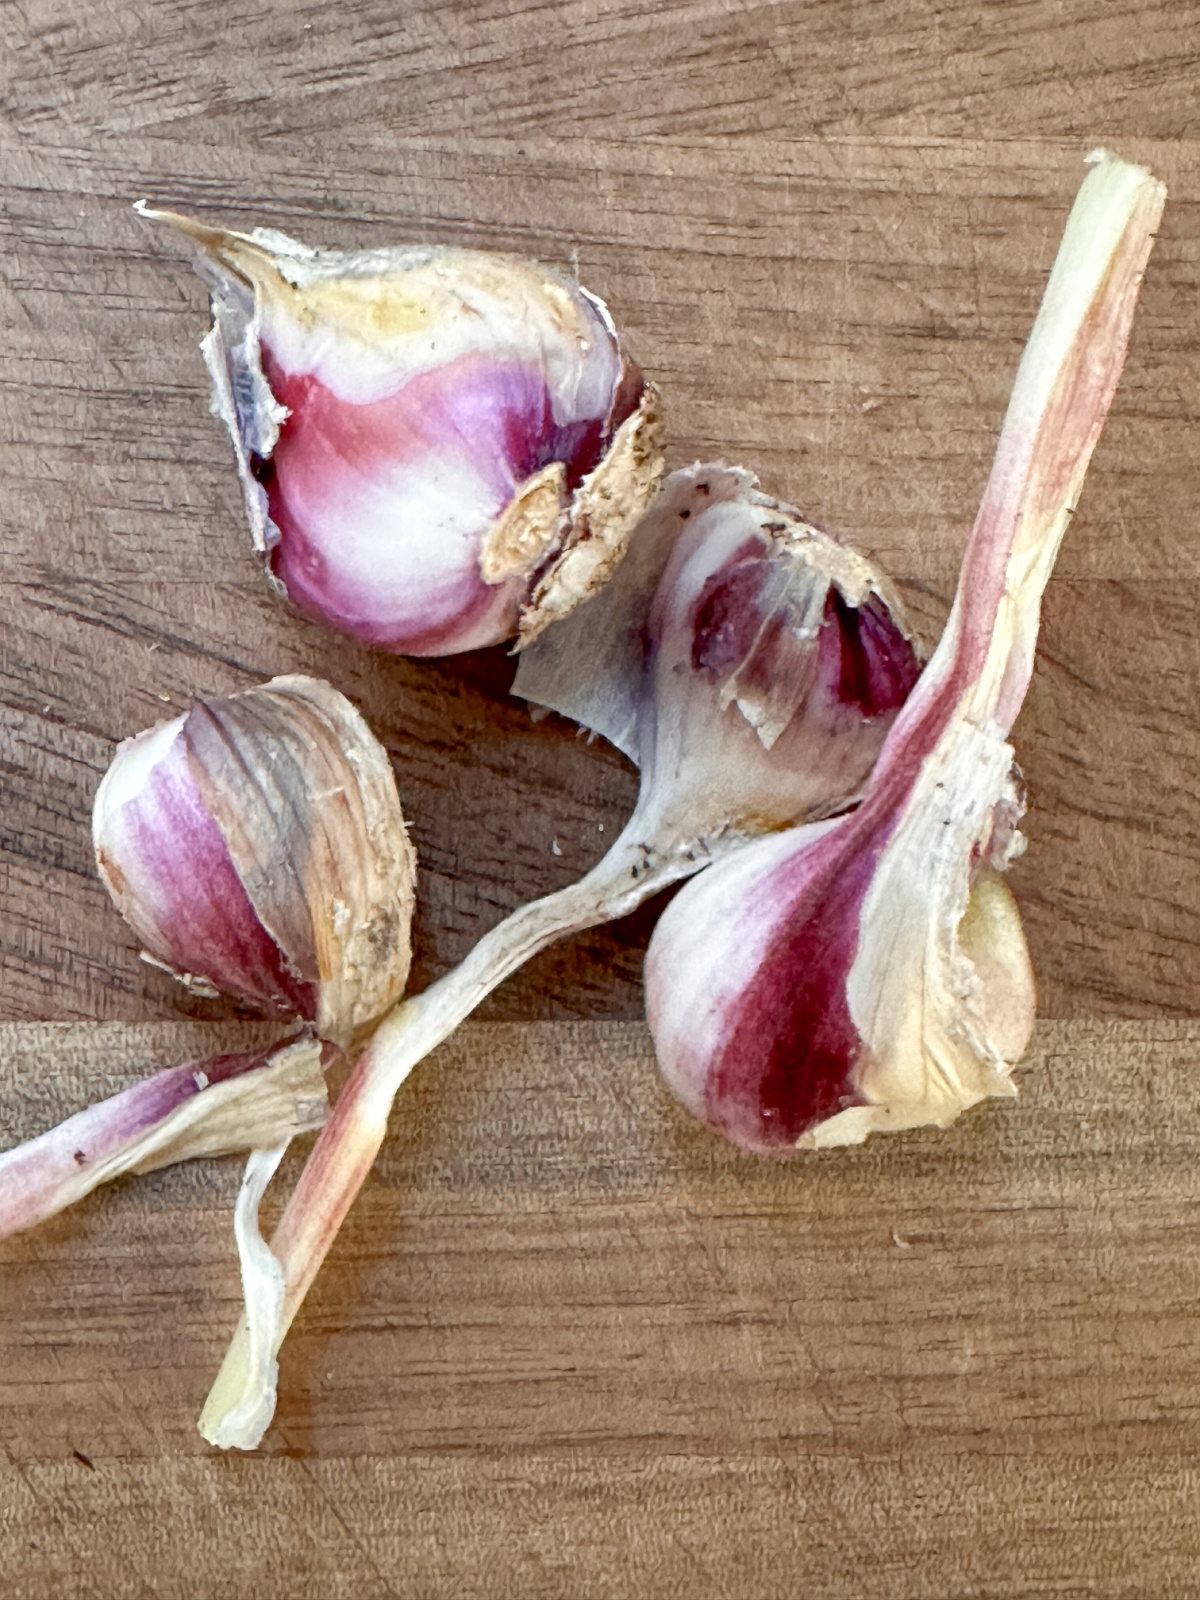 Garlic cloves on cutting board.